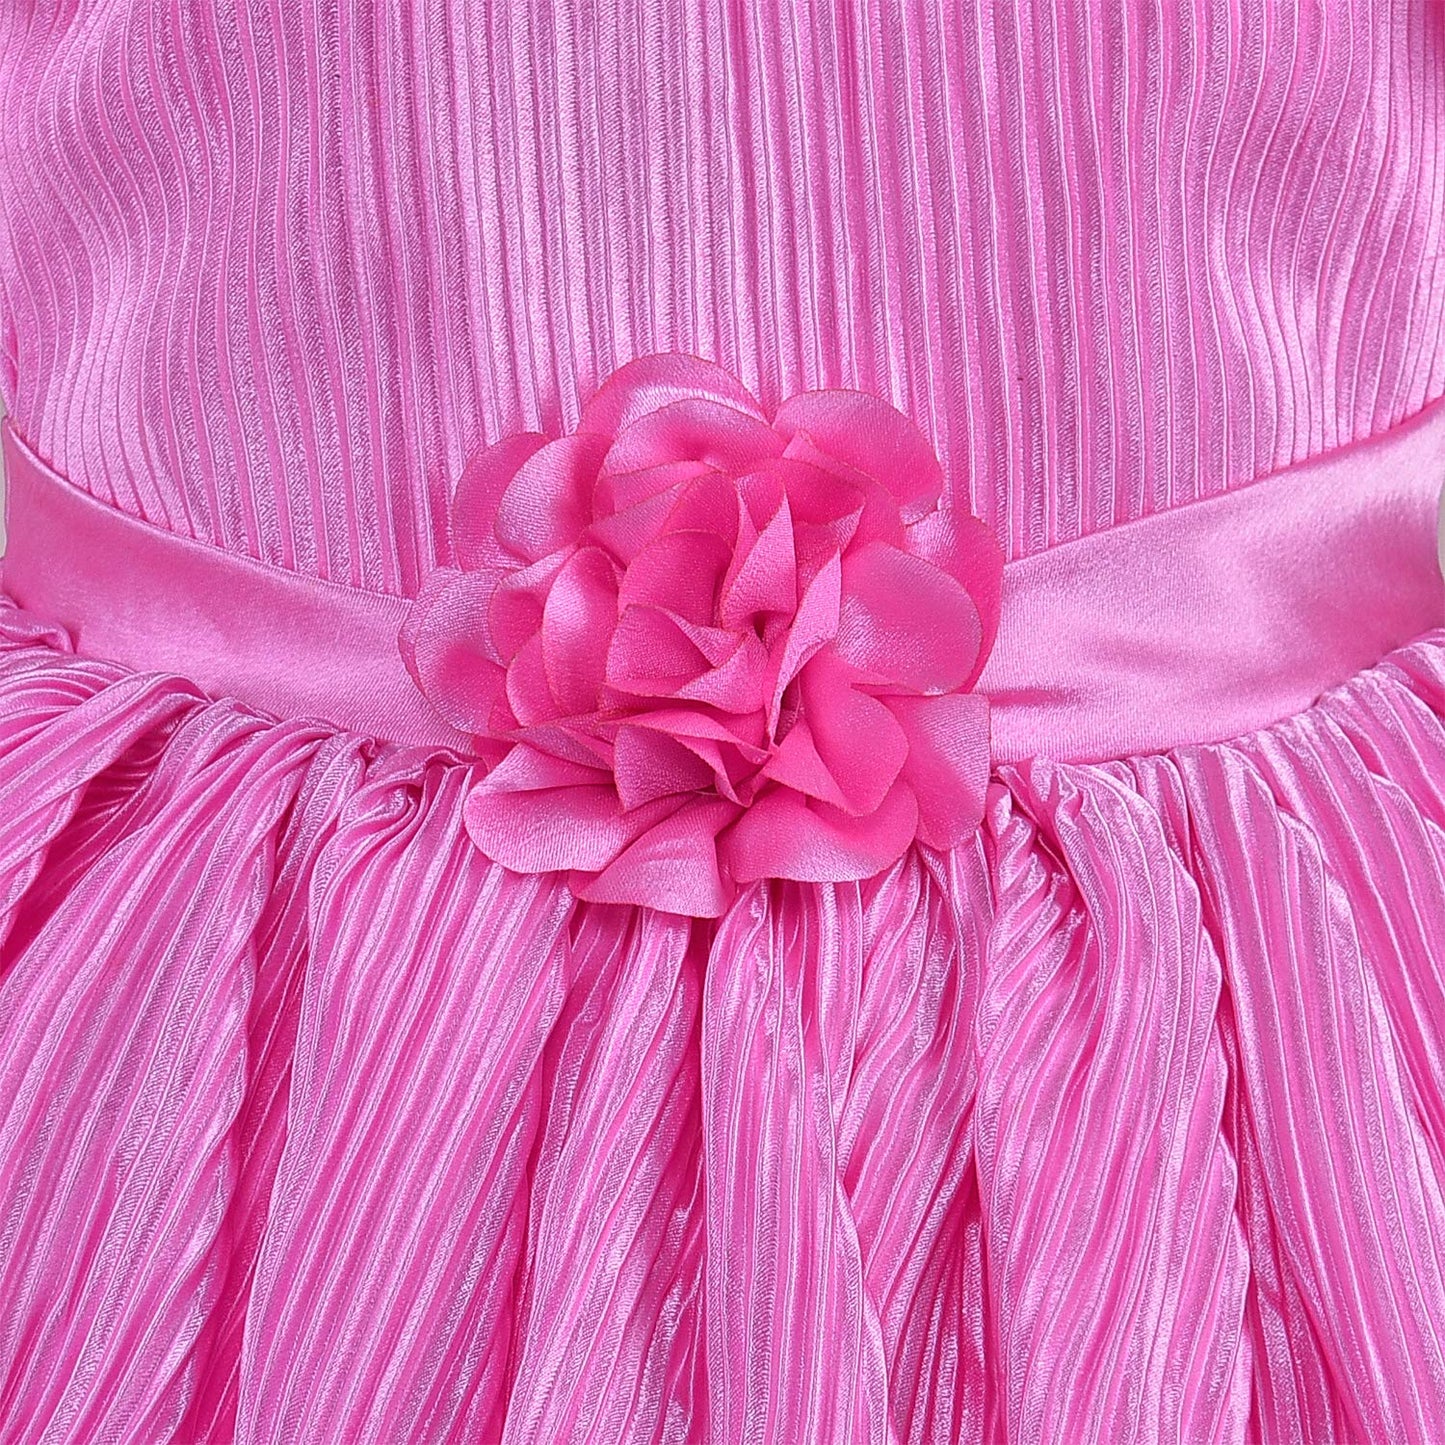 Wish Karo Baby Girls Partywear Frocks Dress For Girls (fe2789bpnk)